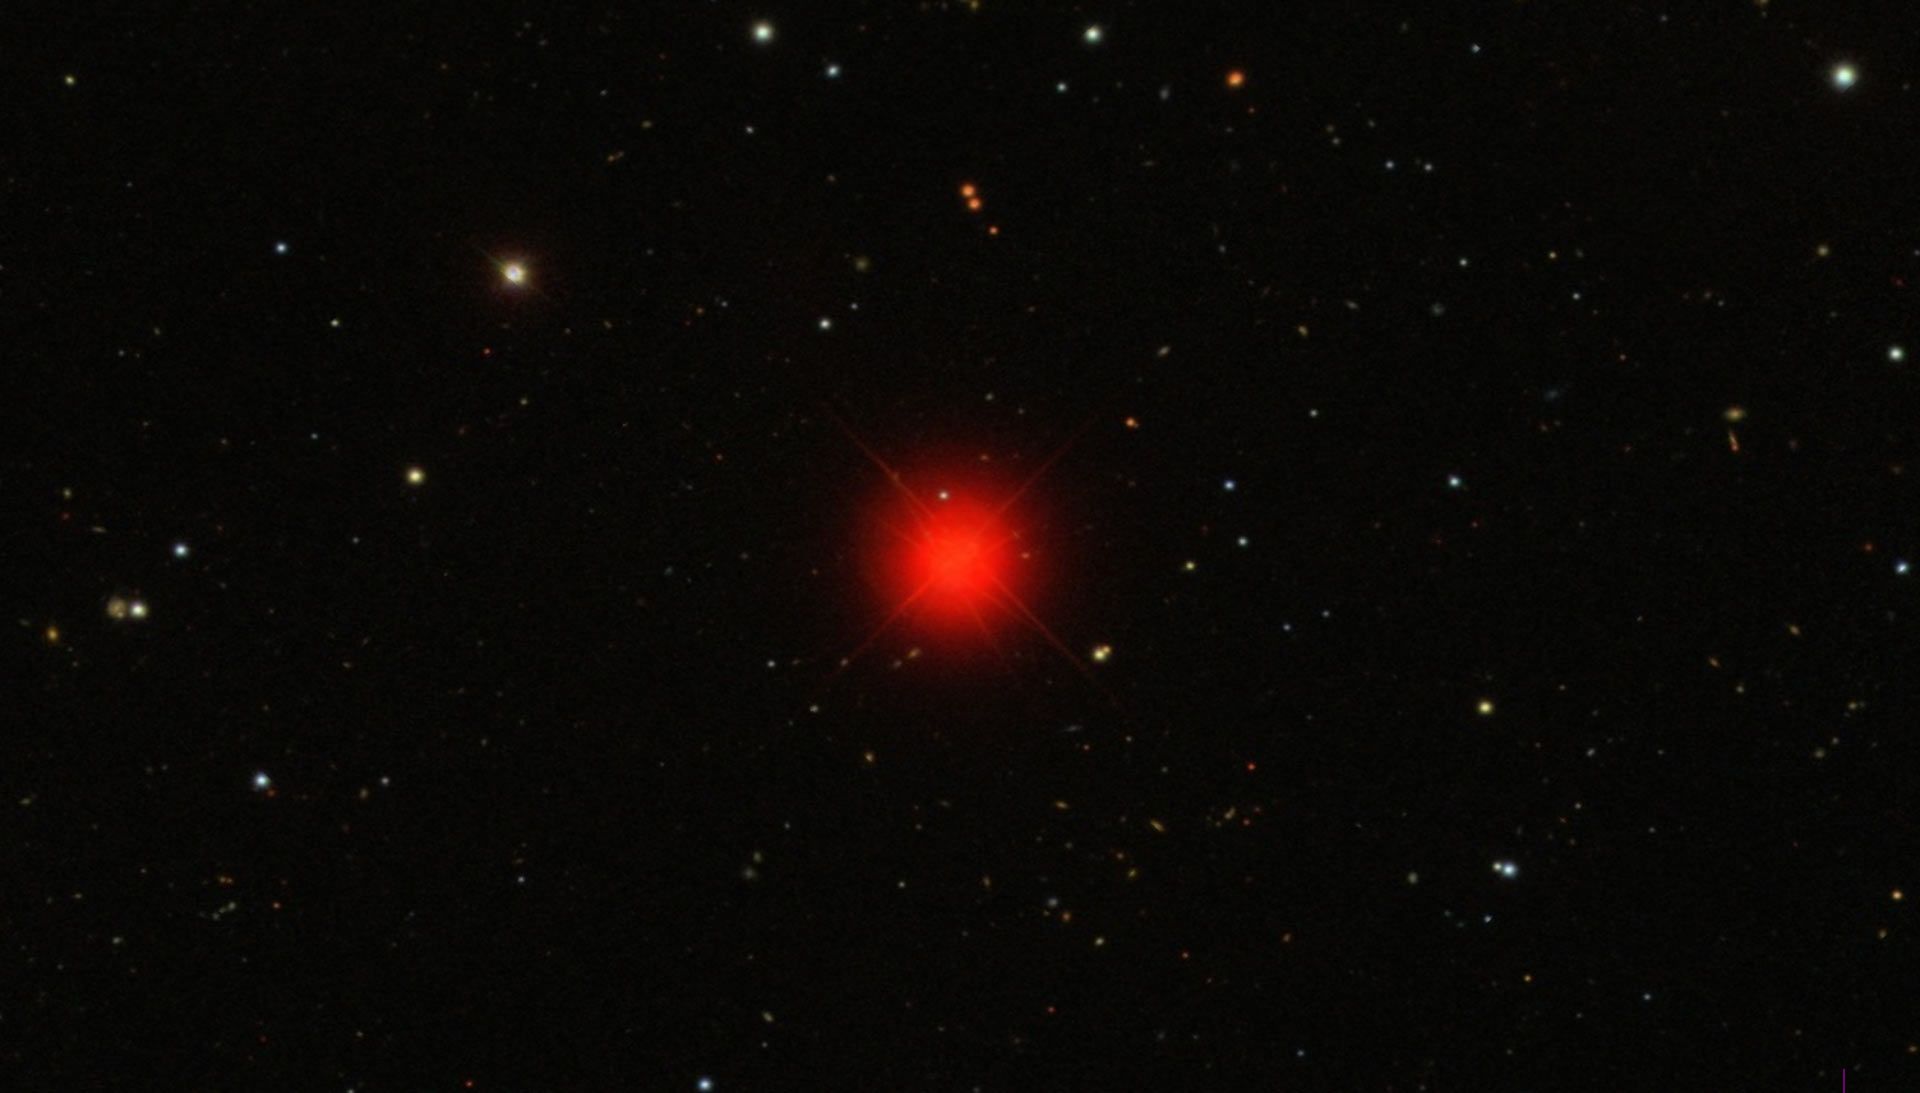 2MASS J0523-1403